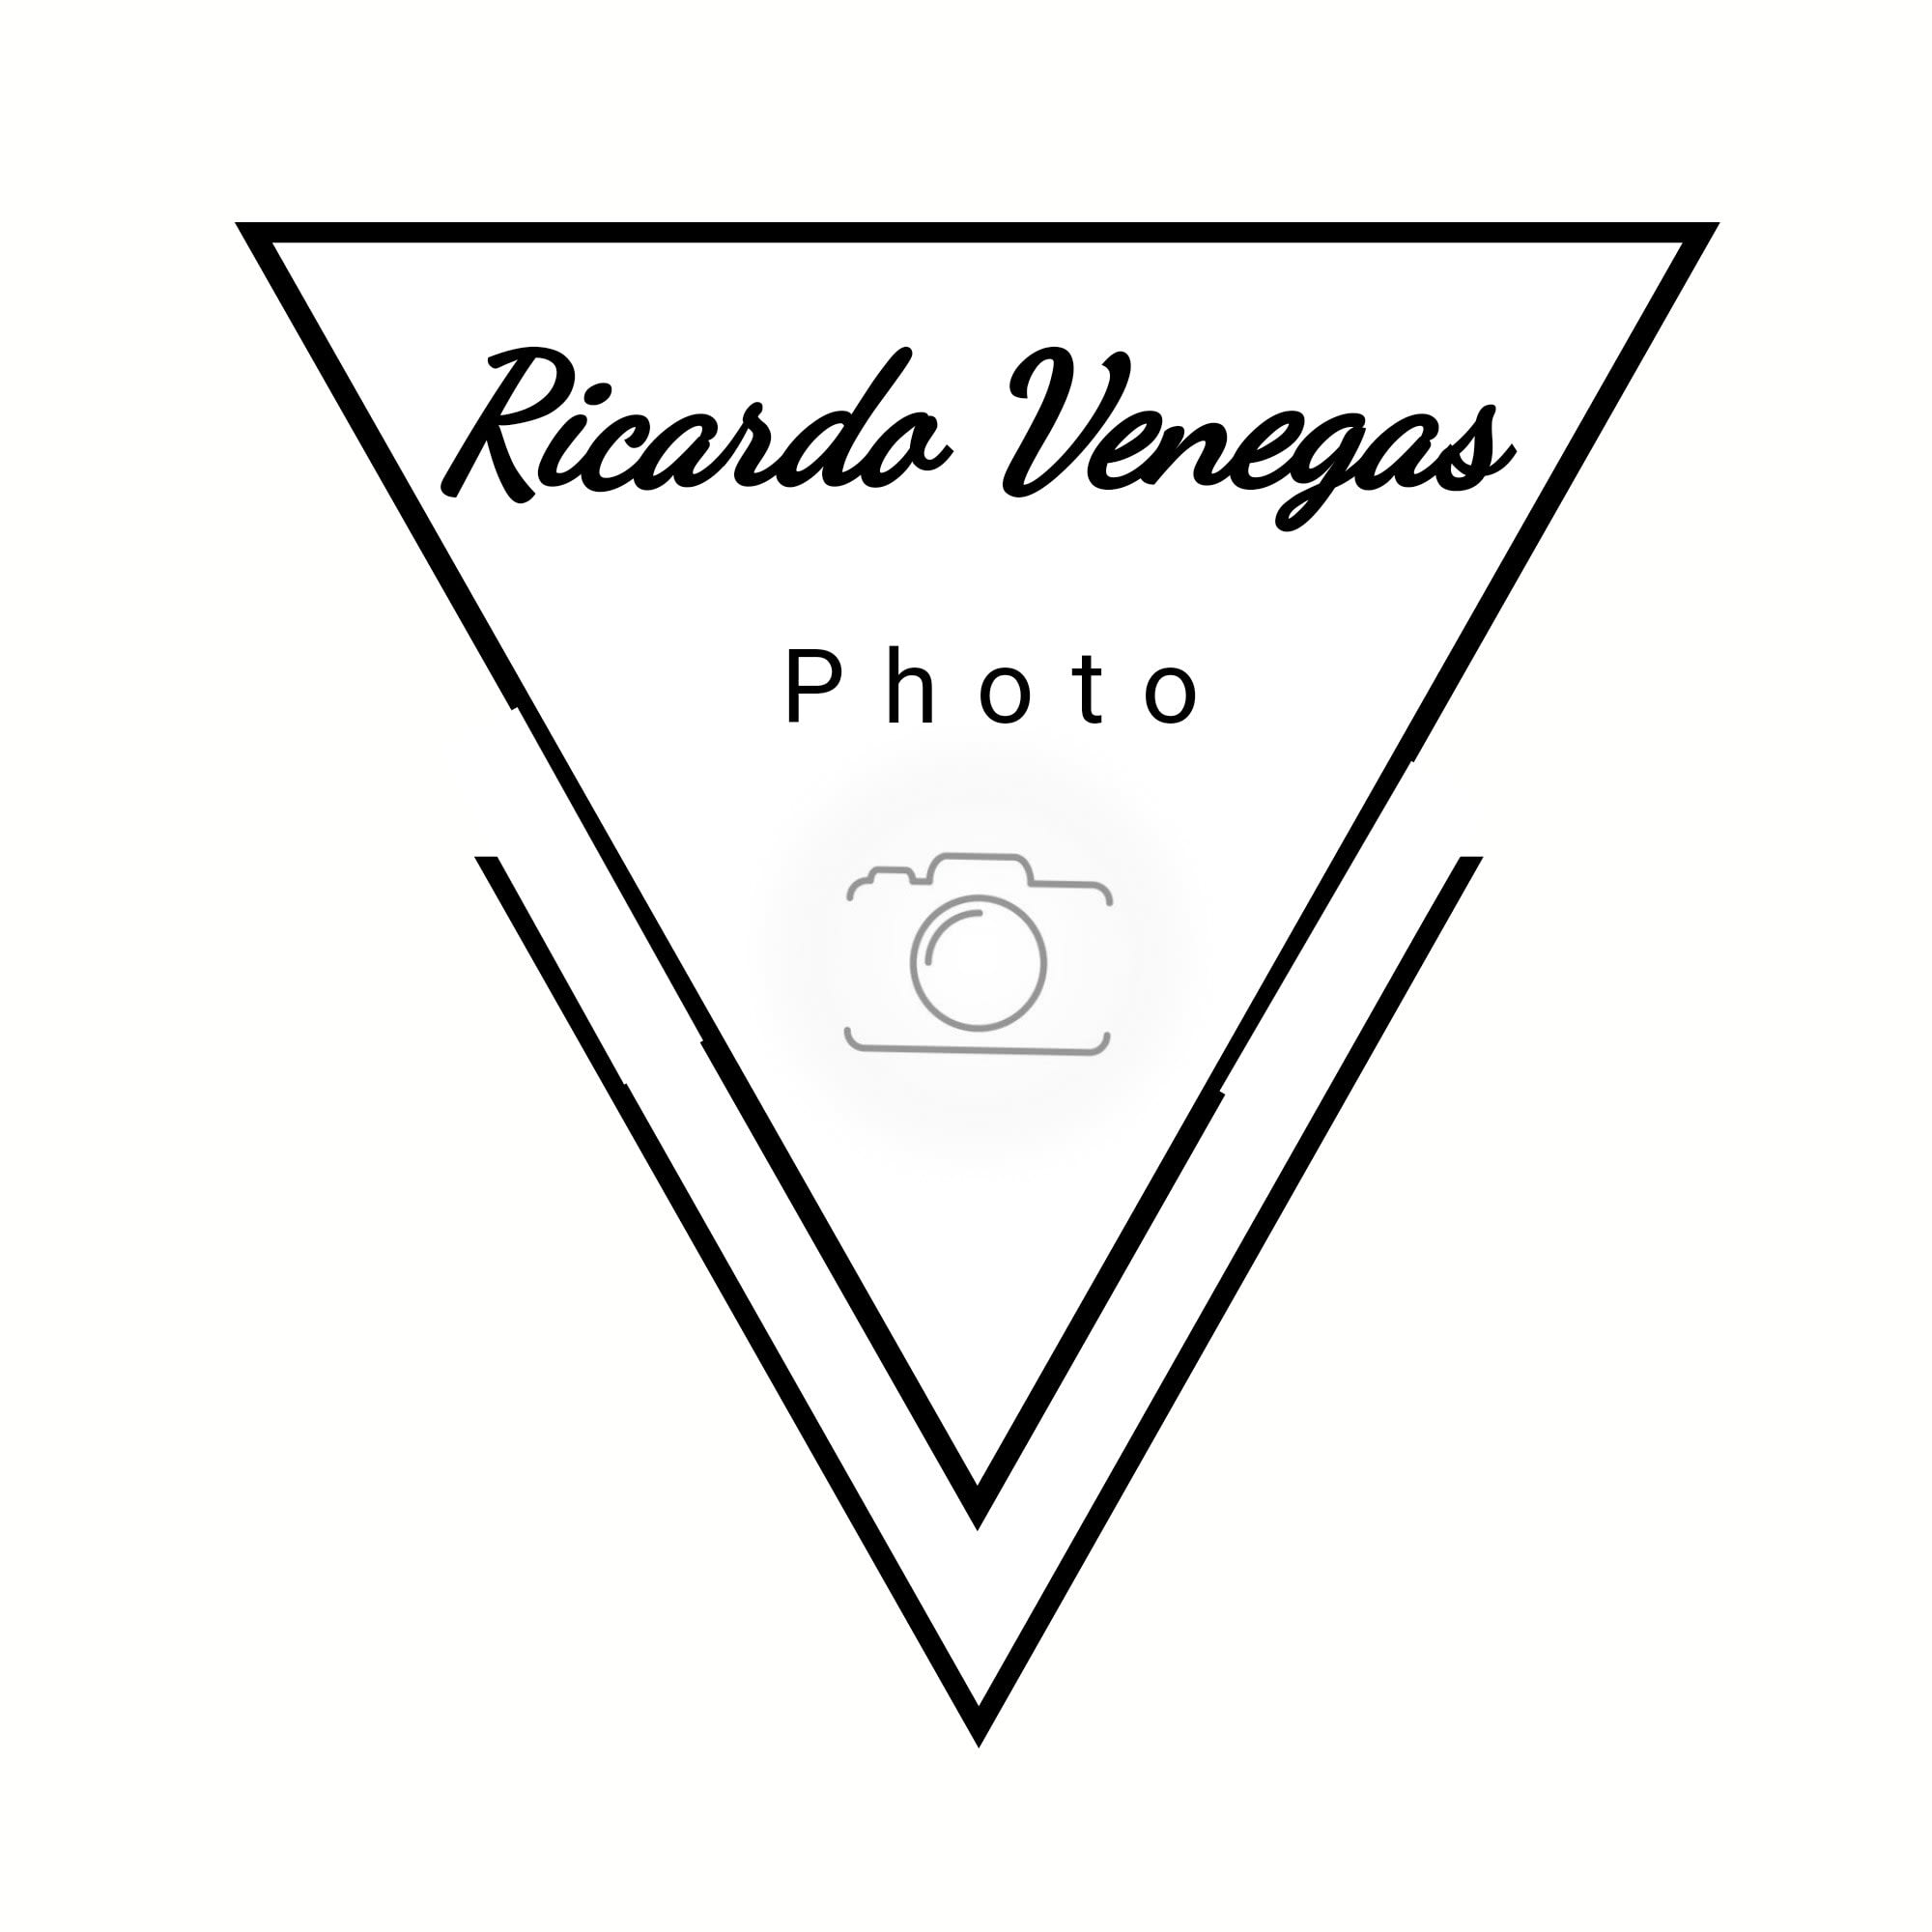 Ricardo Venegas Photo